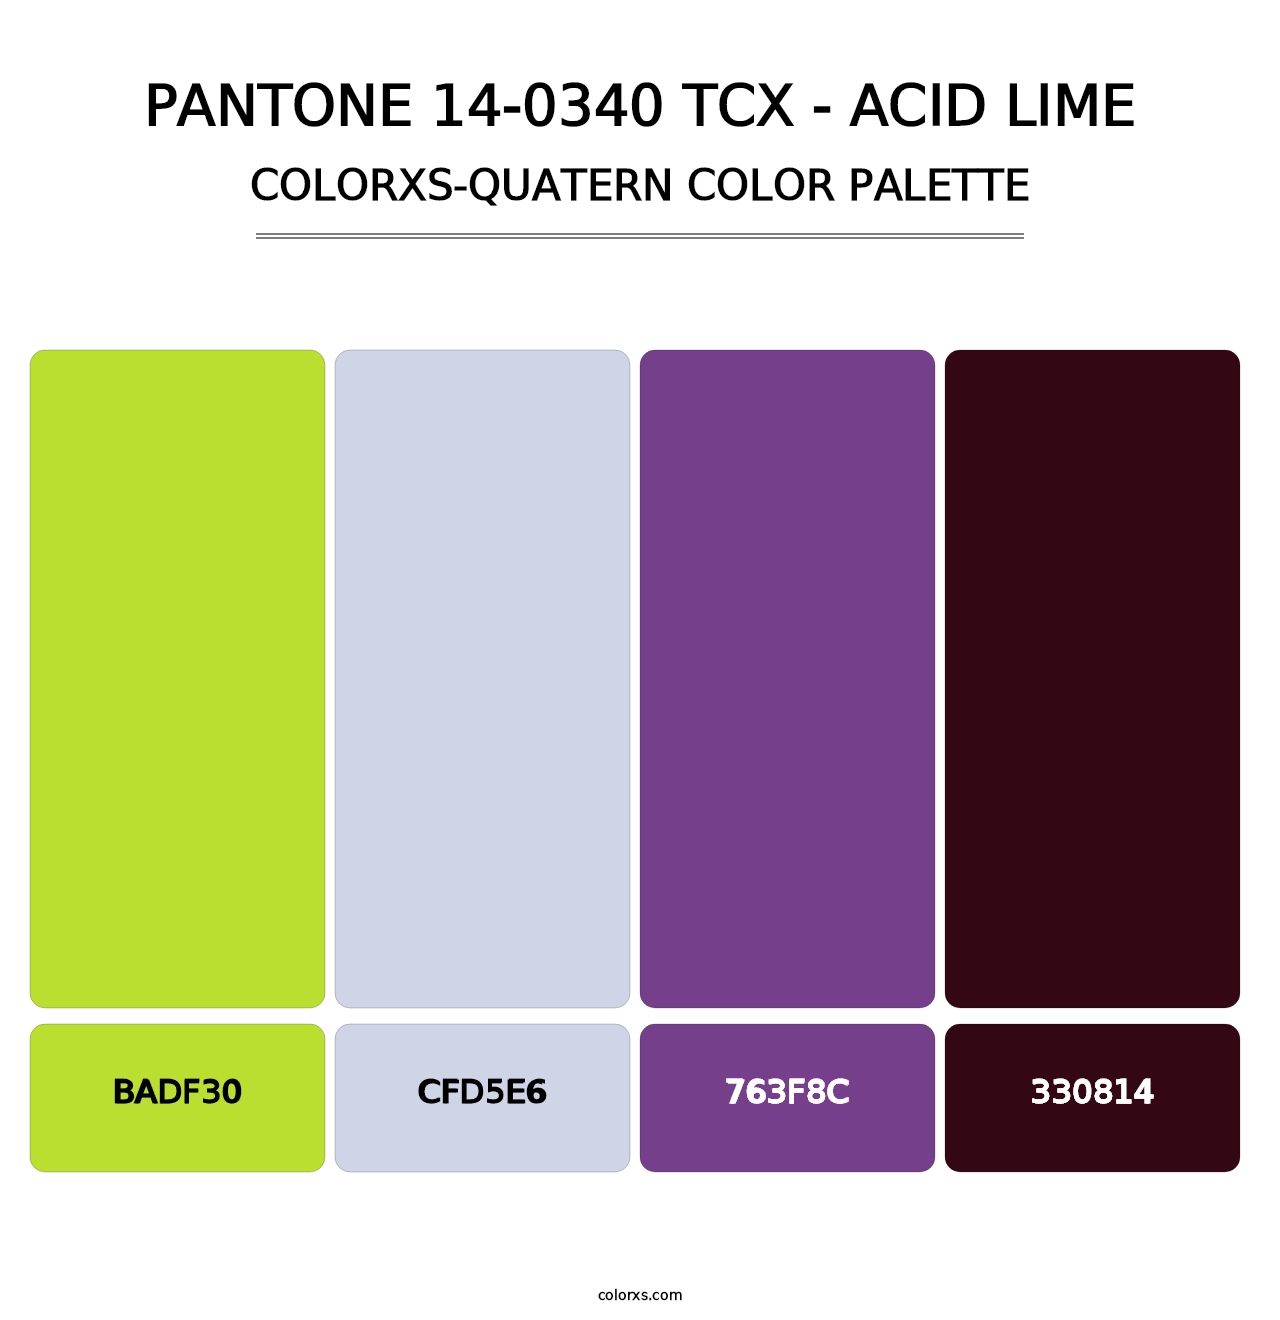 PANTONE 14-0340 TCX - Acid Lime - Colorxs Quatern Palette